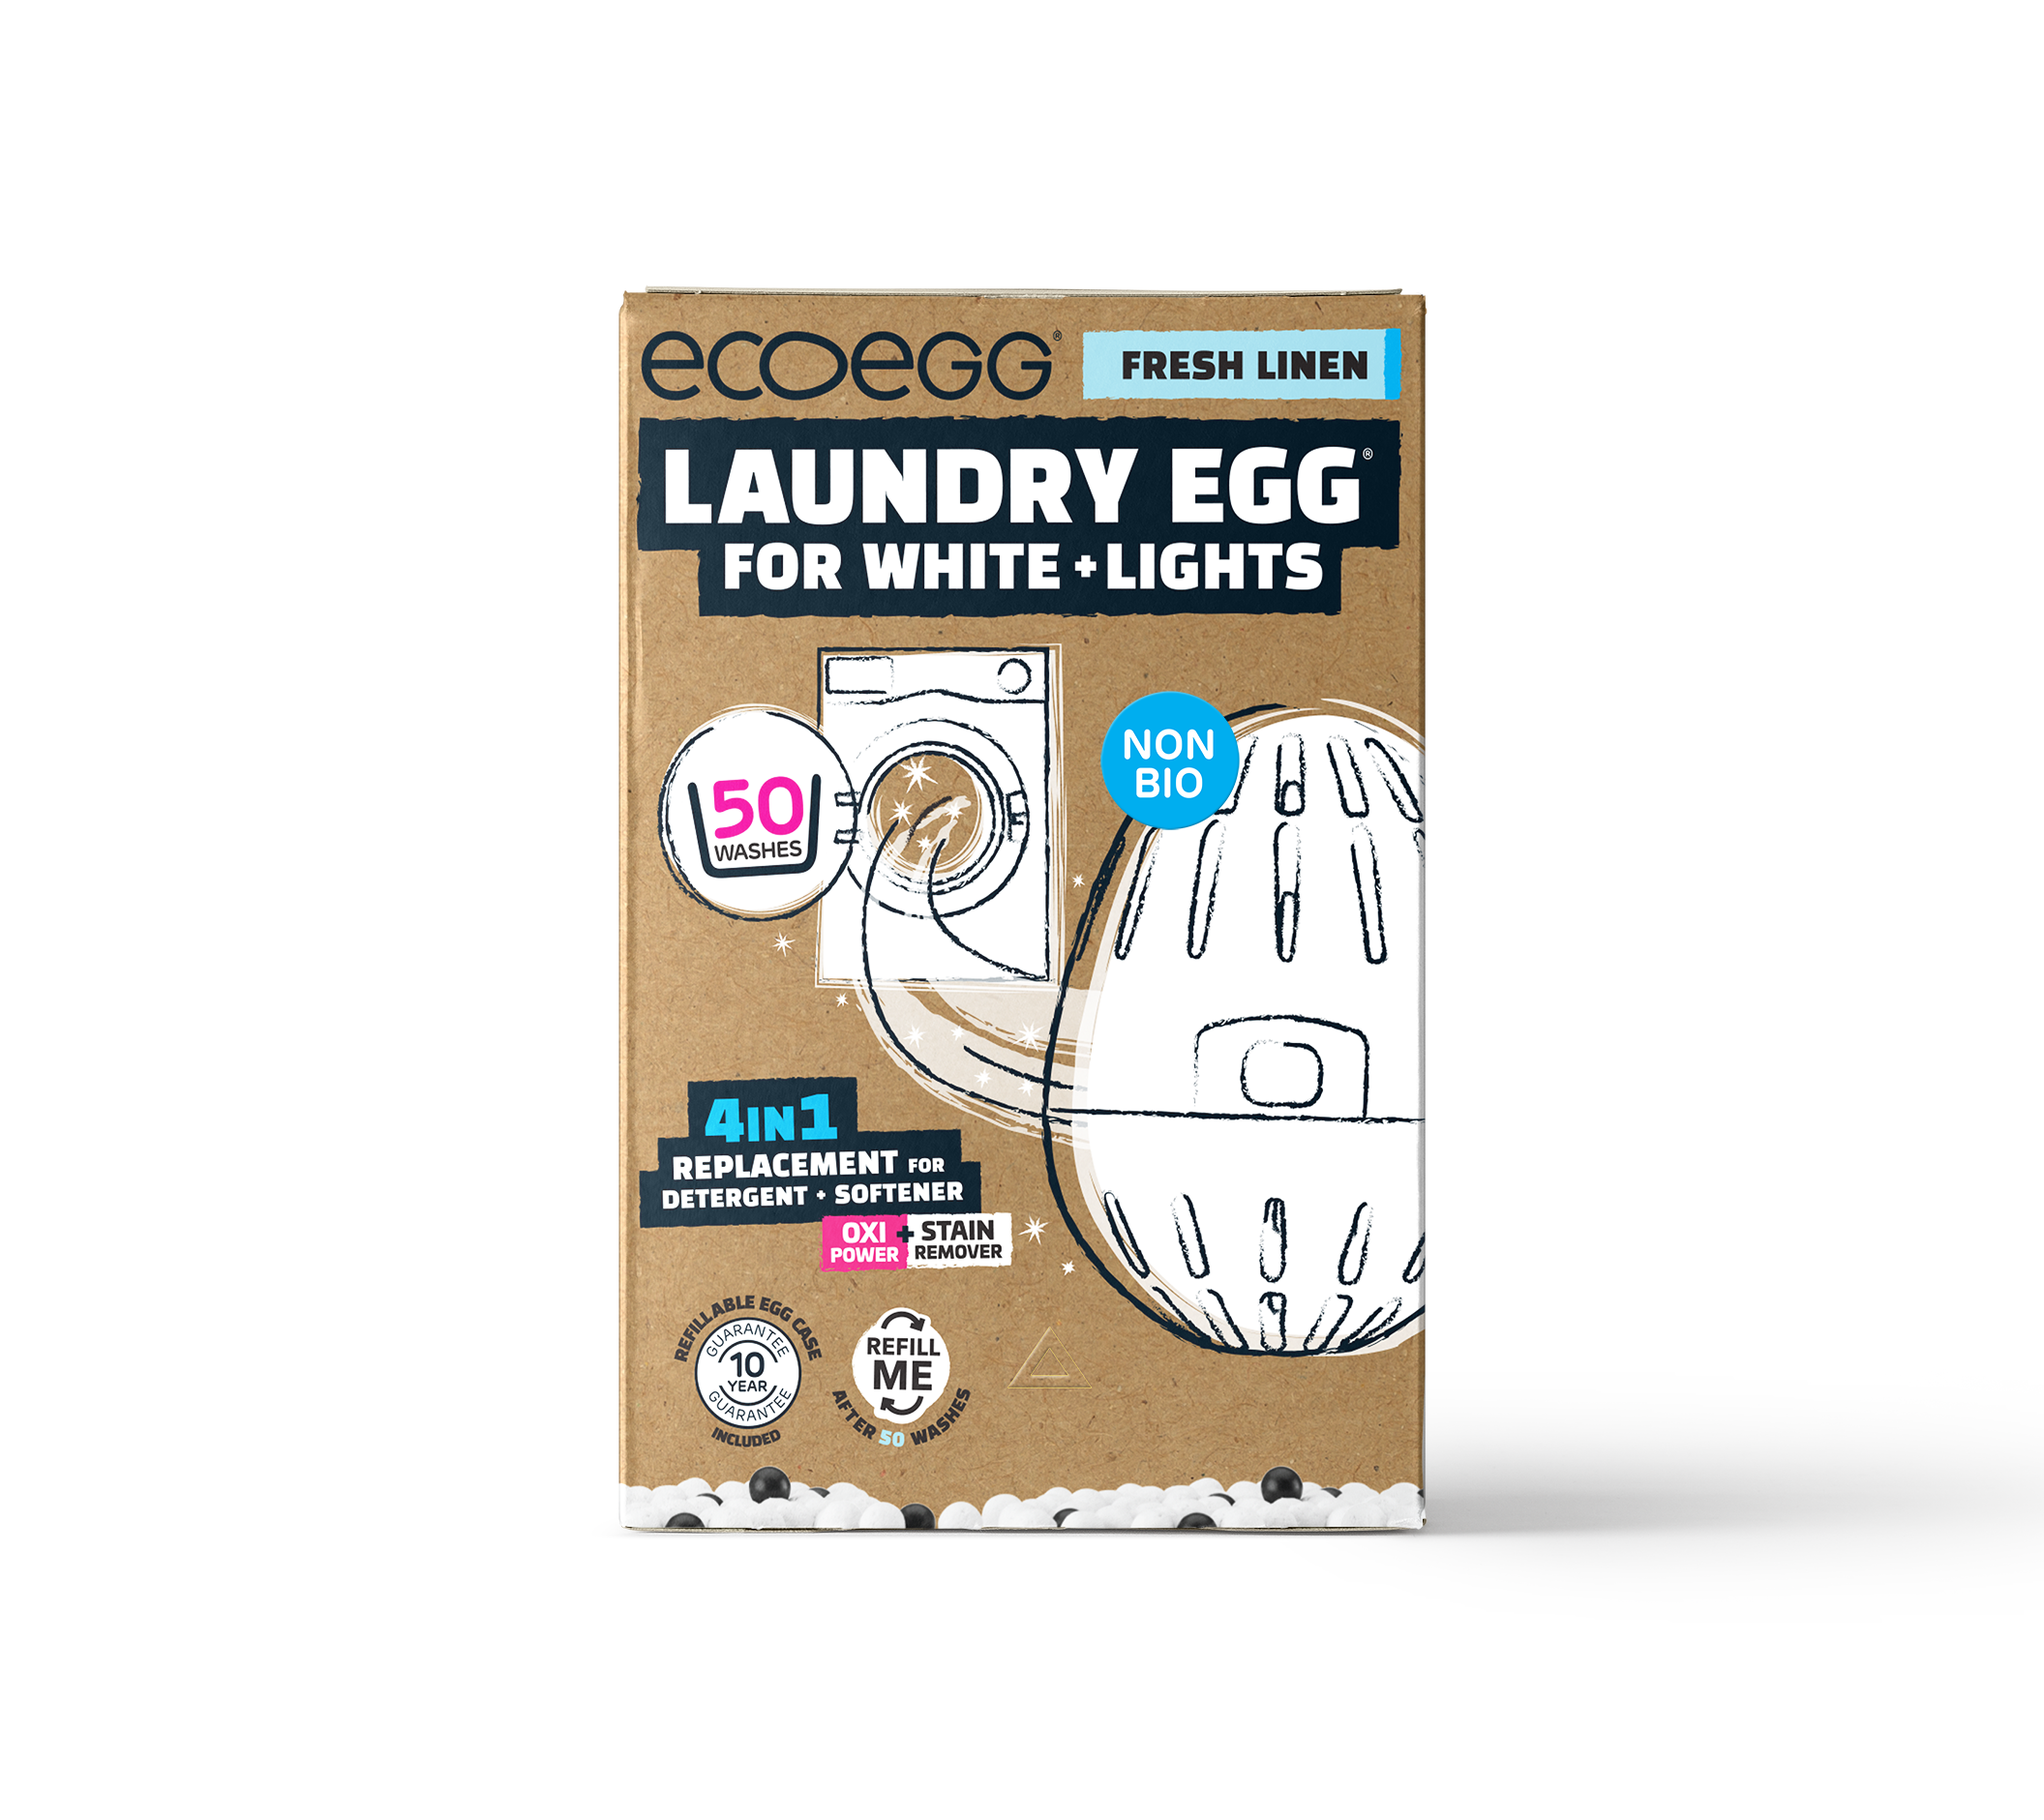 Ecoegg Laundry Egg 50 Washes Fresh Linen White+Light 1